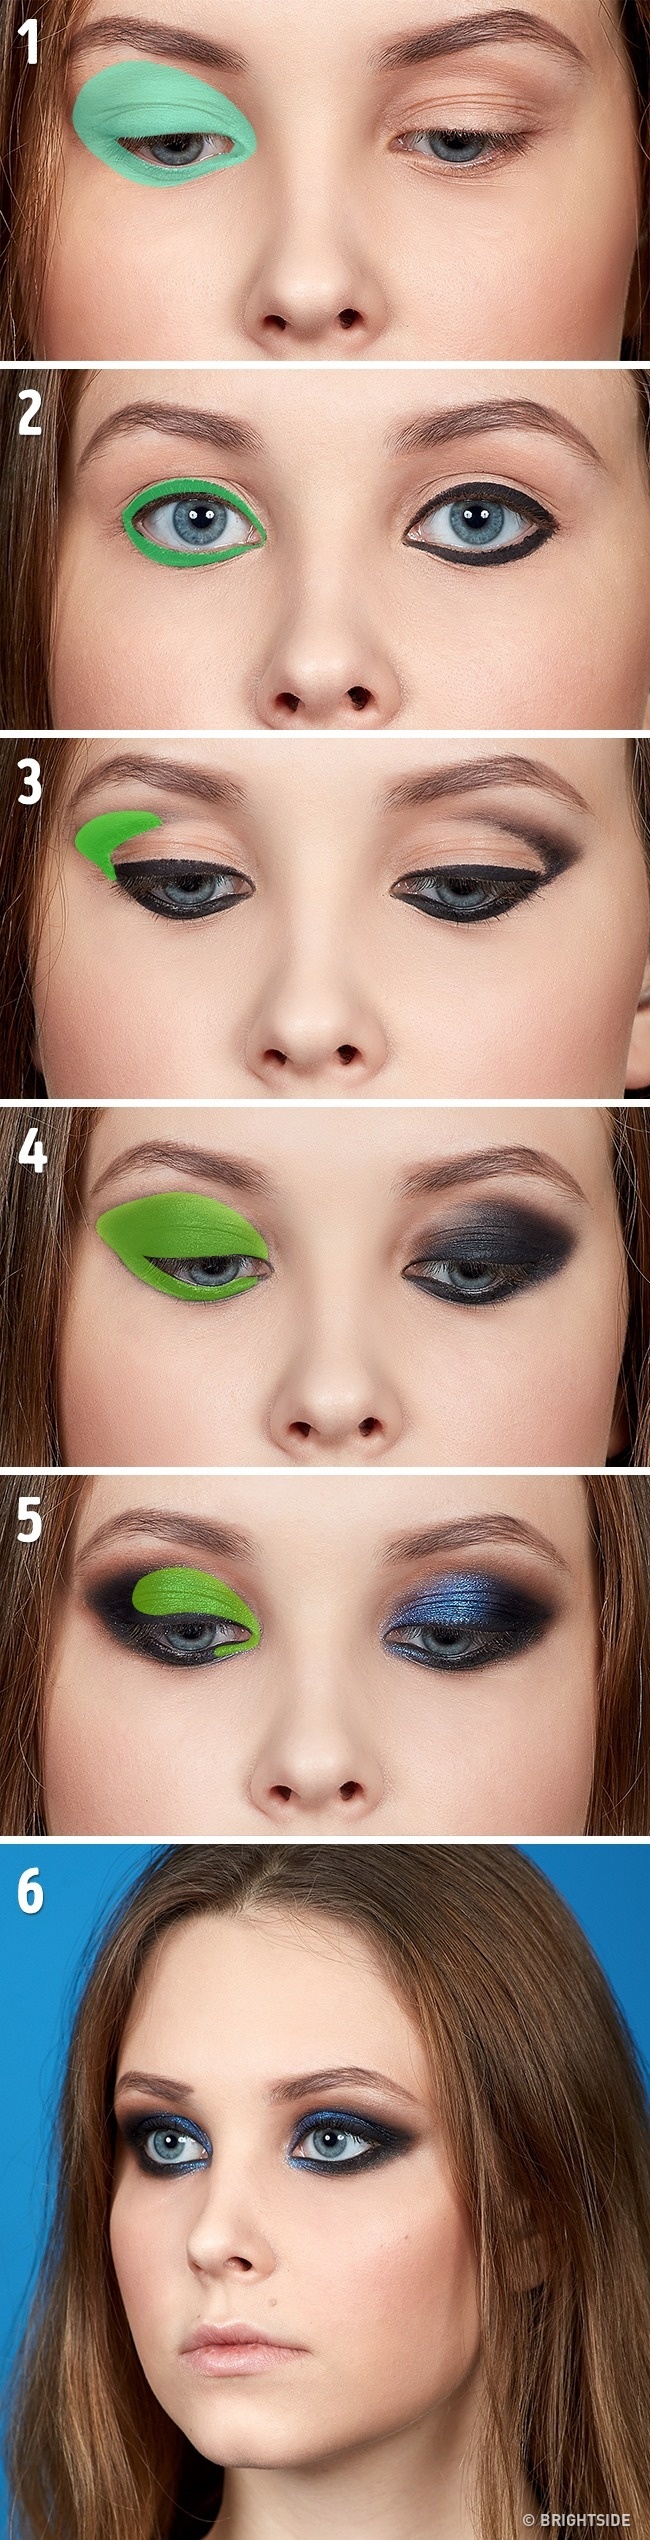 smokey eye 5 ključnih tehnika šminkanja koje treba da savladaš